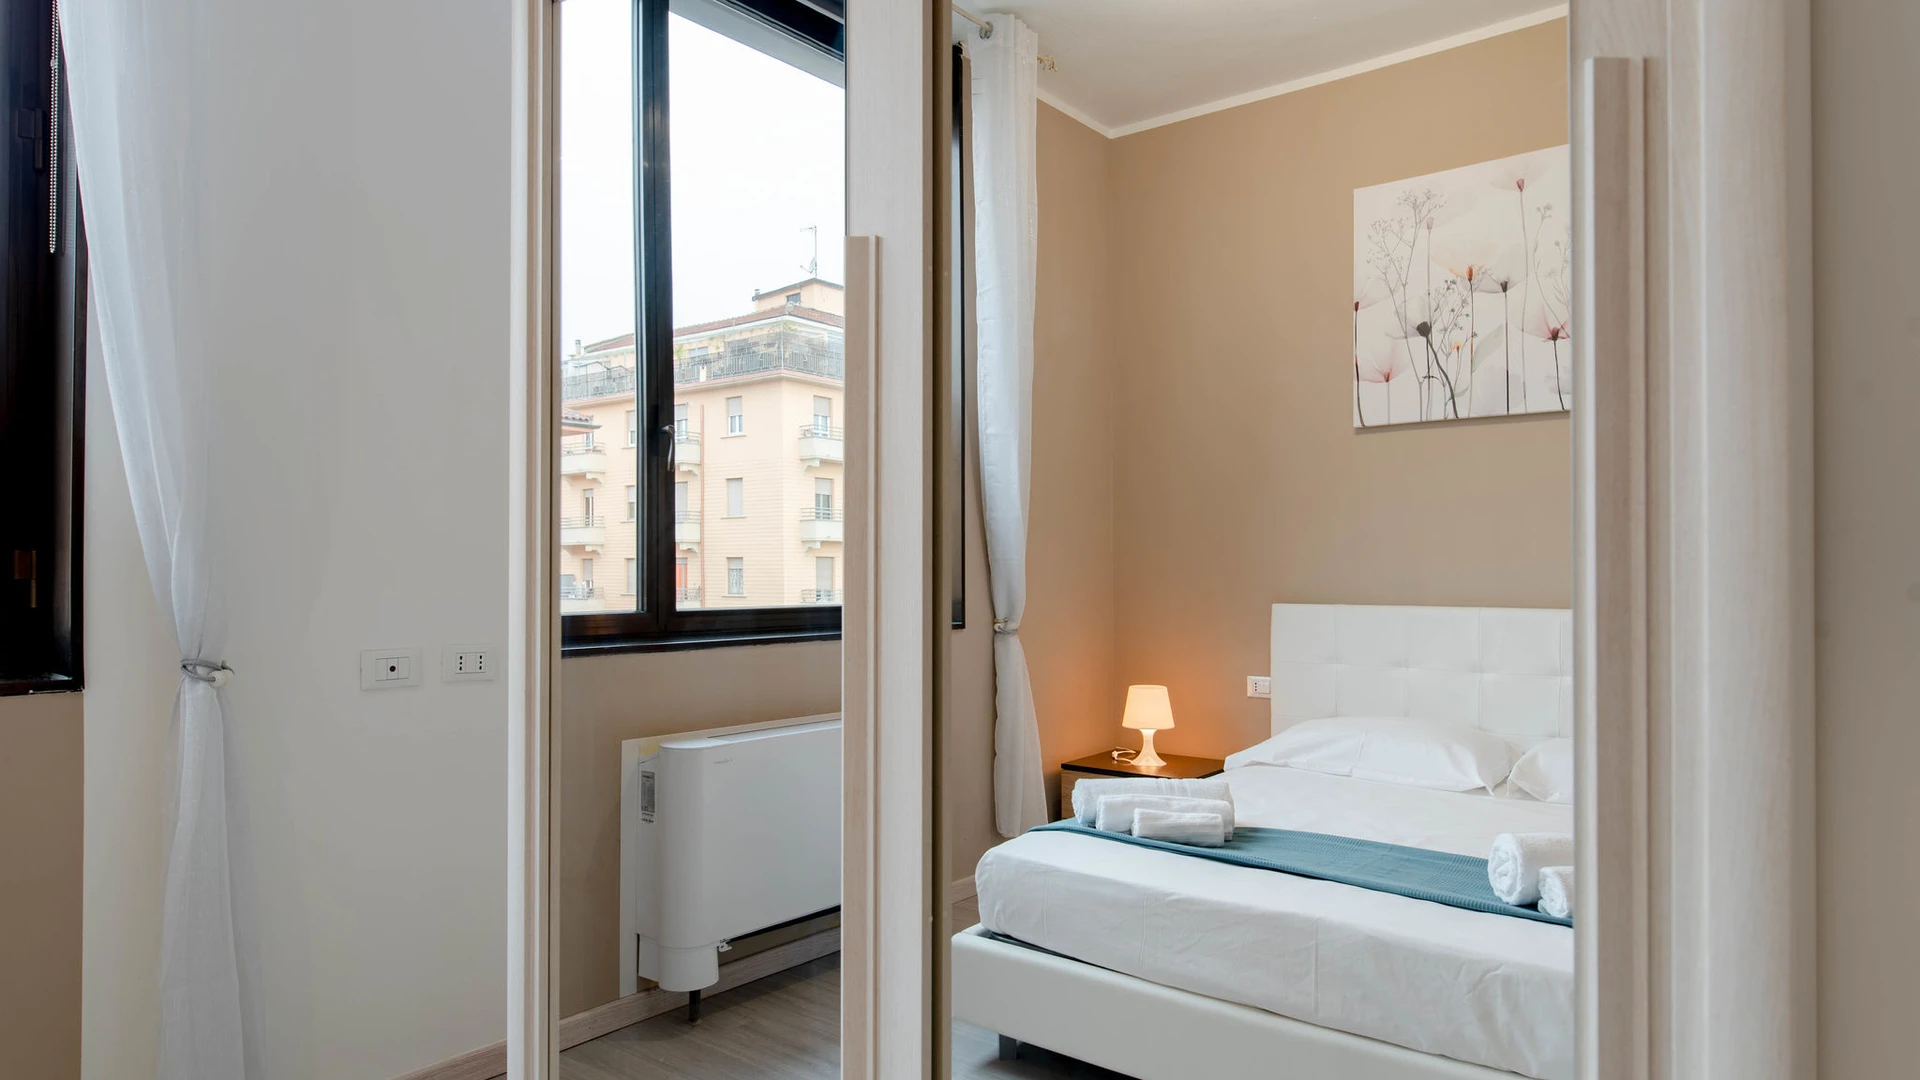 Torino içinde 2 yatak odalı konaklama